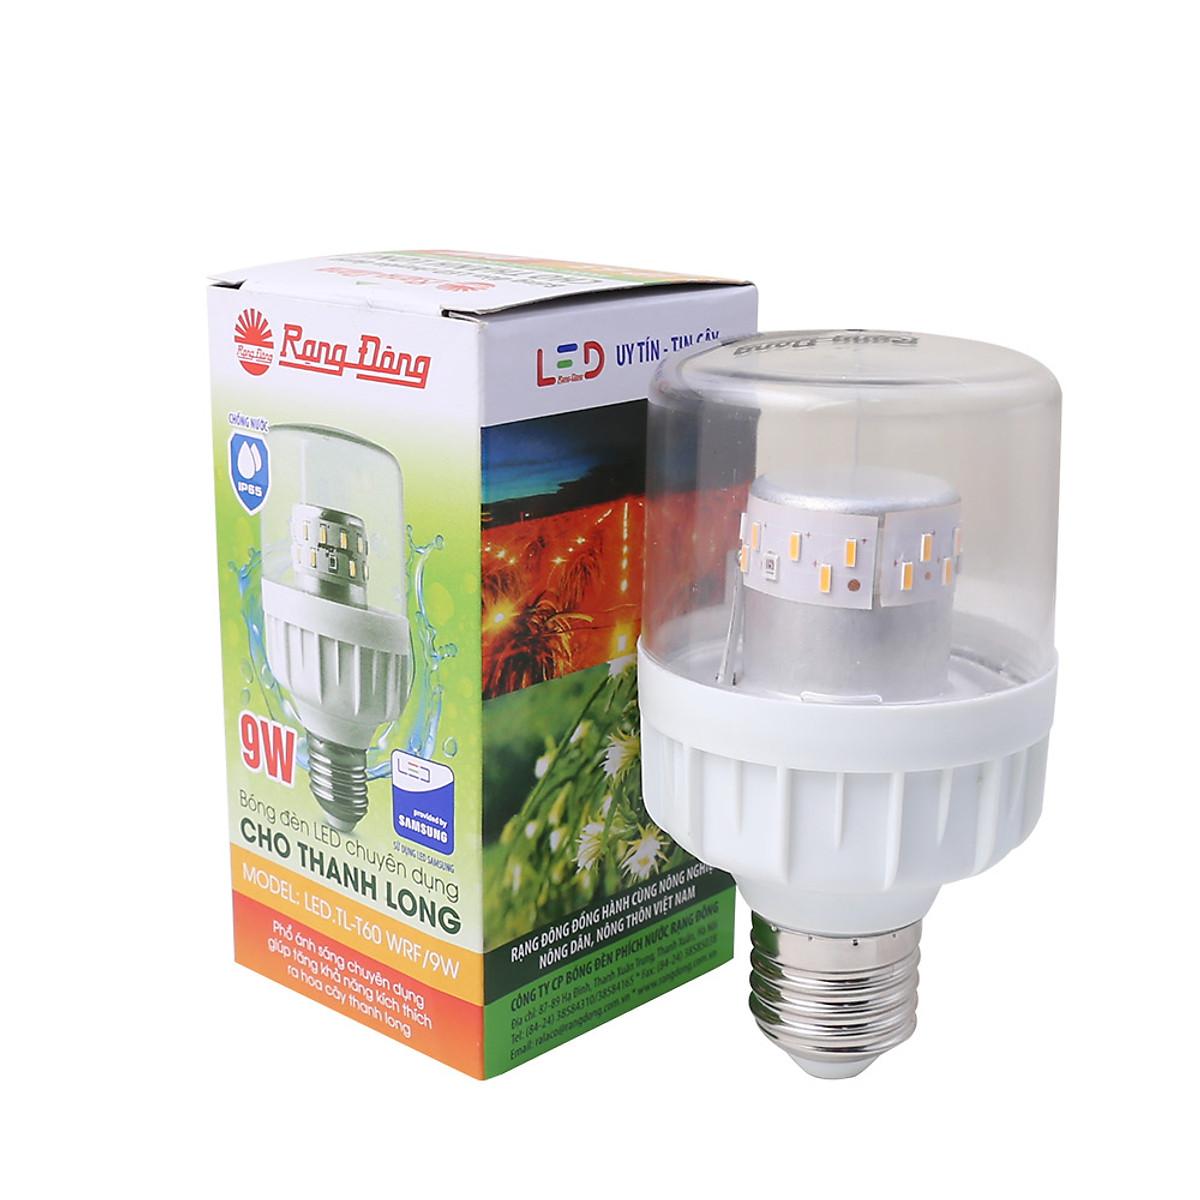 Đèn LED trồng cây Thanh long, chong đèn Thanh long quang hợp chính hãng Rạng Đông TL-T60 WFR, 9W